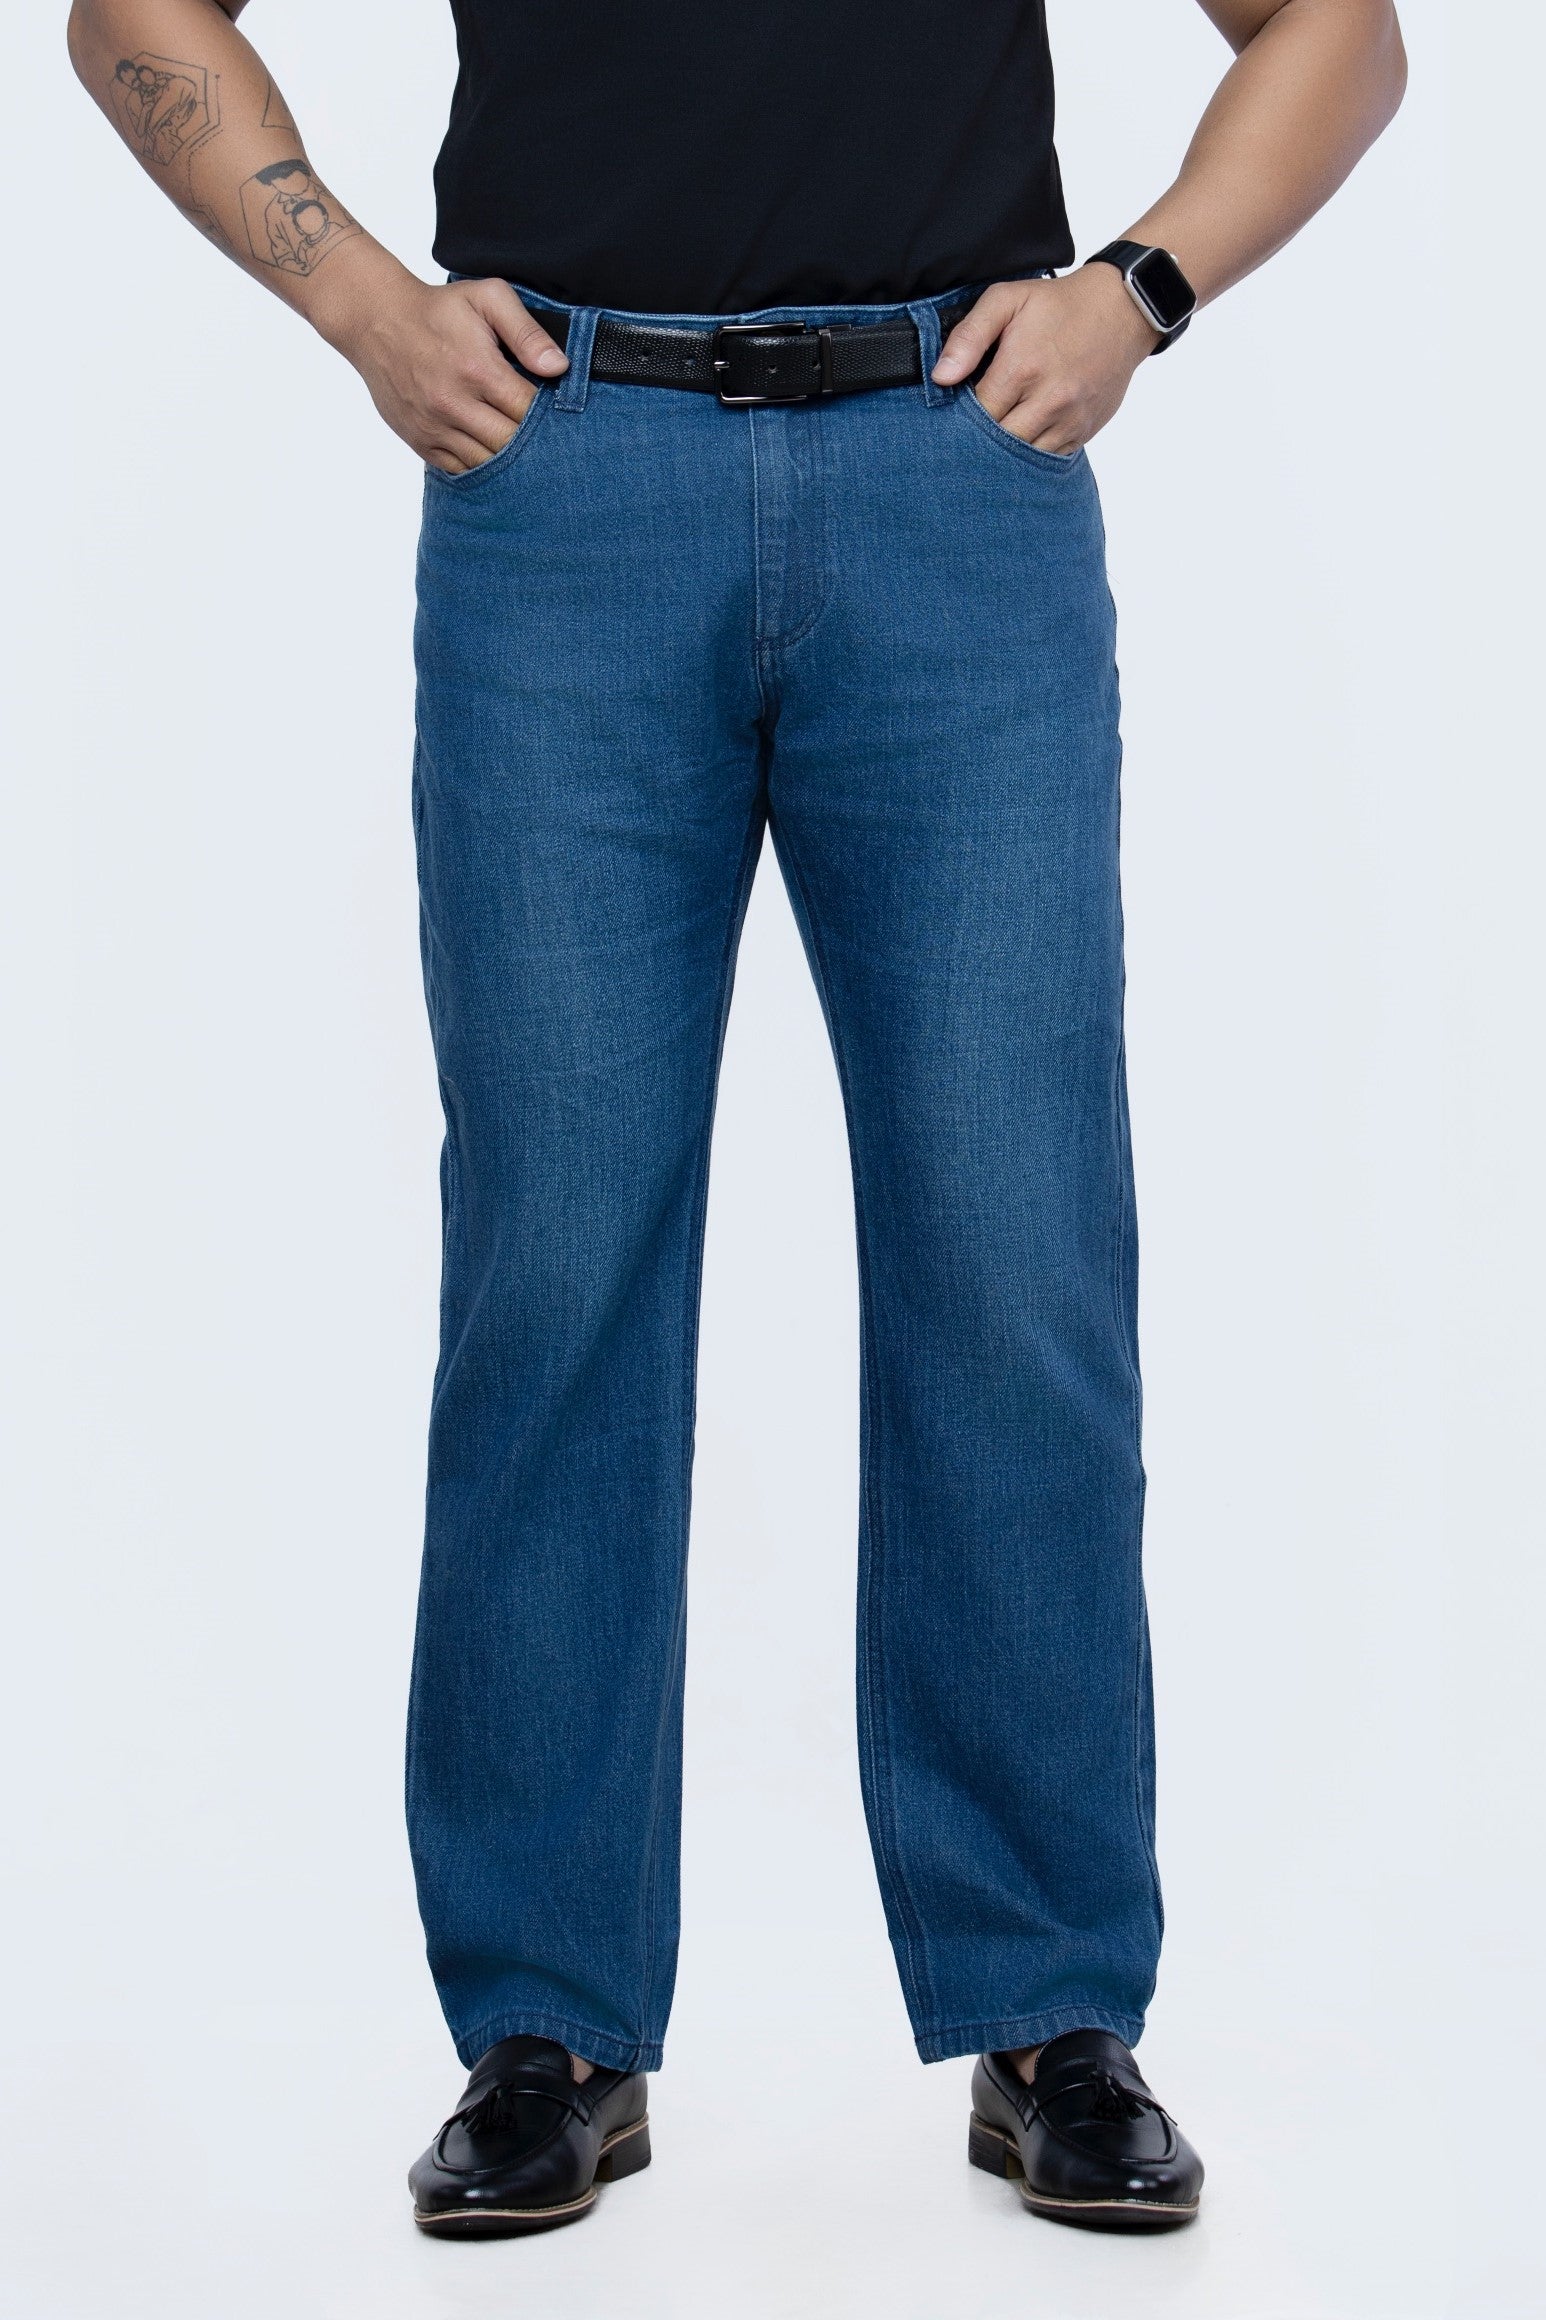 Men's Straight Jeans - True Navy Mid